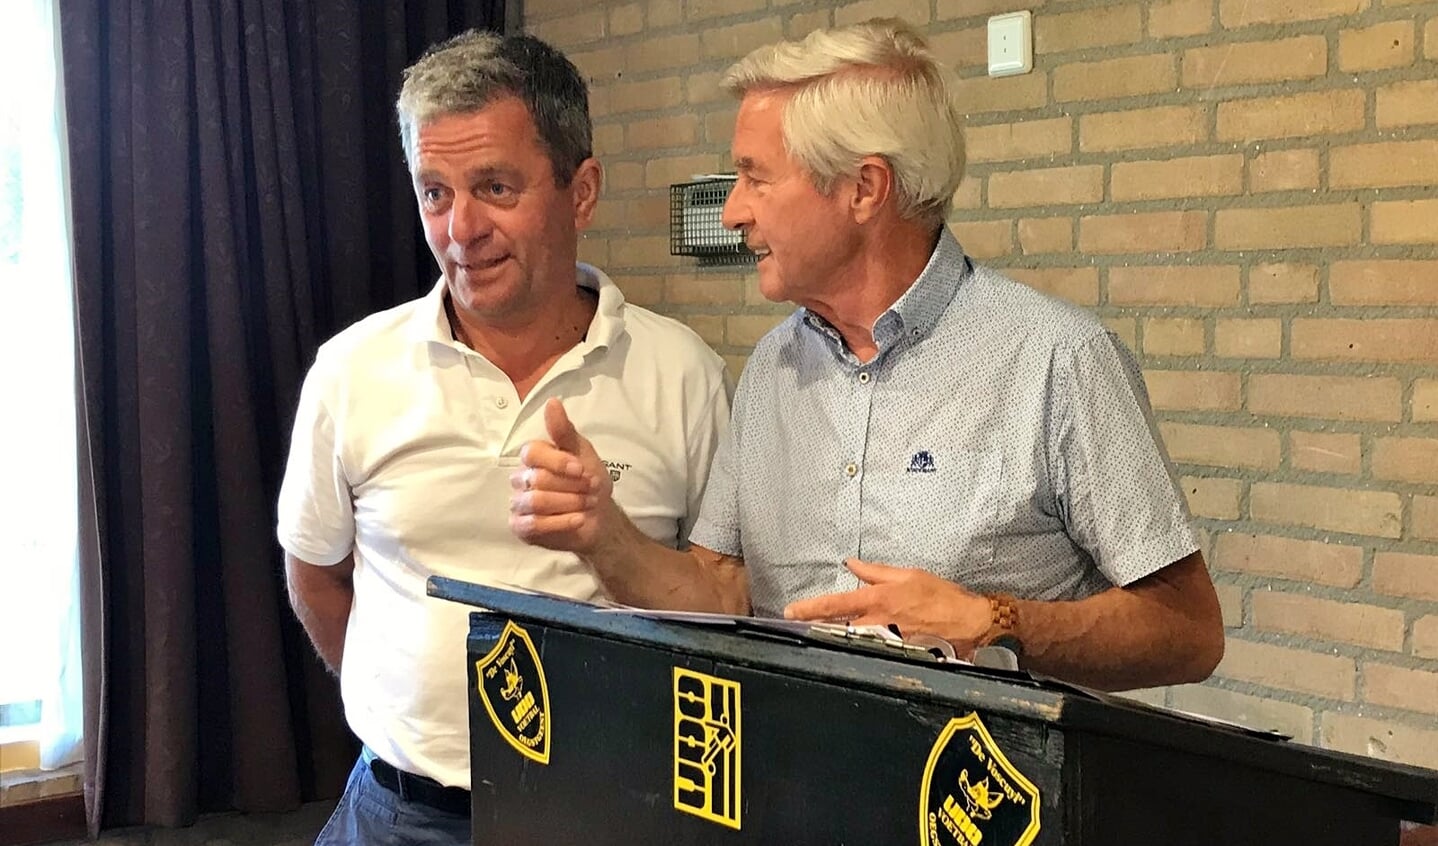 De beide voorzitters Luuk van der Zon (vv UDO) en Jan van den Broeck (vv Oegstgeest) leidden de vergadering van dinsdag 3 juli, met als resultaat de oprichting van FC Oegstgeest.